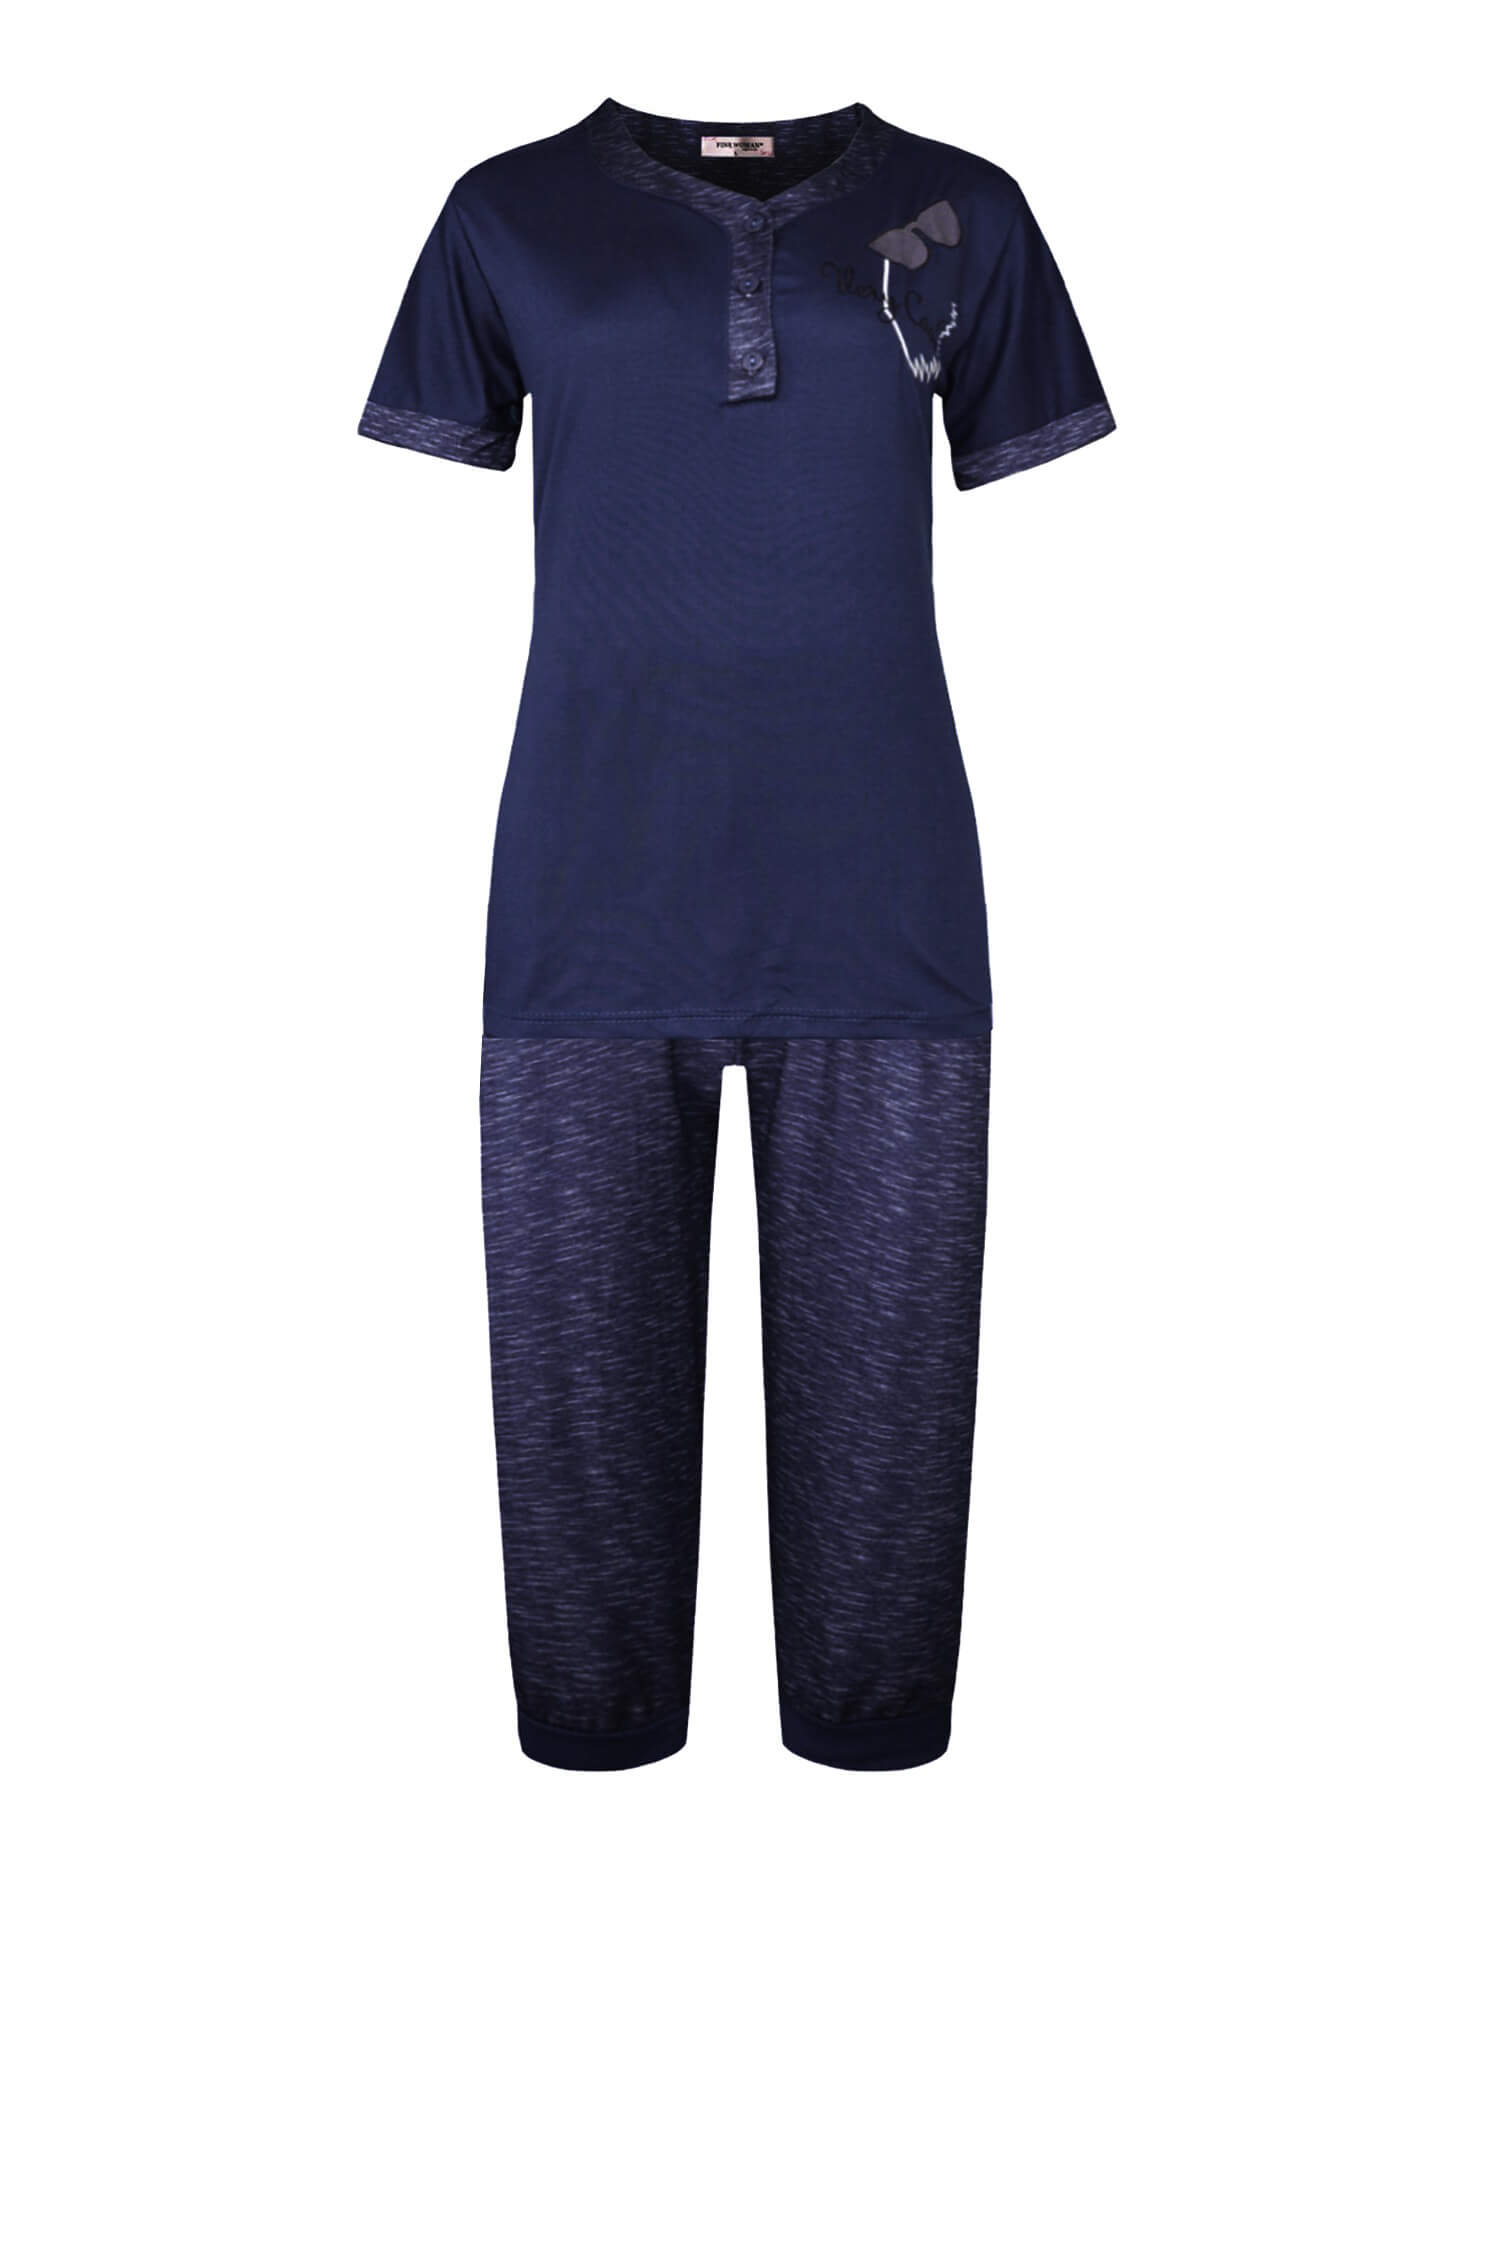 Patricie dámské 3/4 pyžamo s krátkým rukávem 2310 3XL tmavě modrá